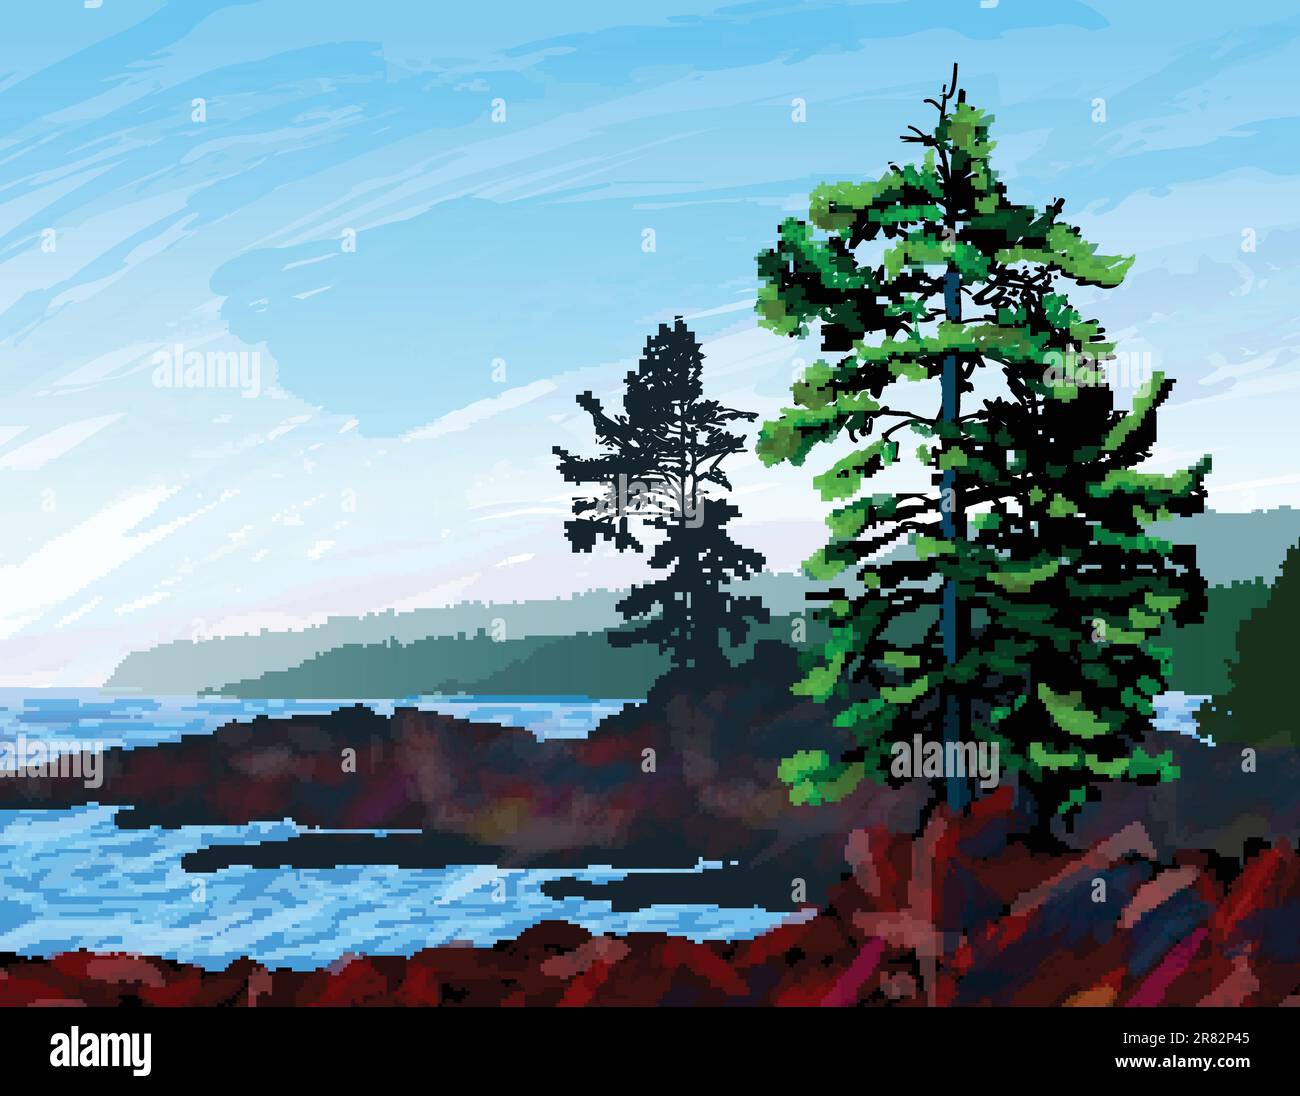 Belle peinture numérique représentant une scène de la côte ouest accidentée de l'île de Vancouver en Colombie-Britannique. Illustration de Vecteur